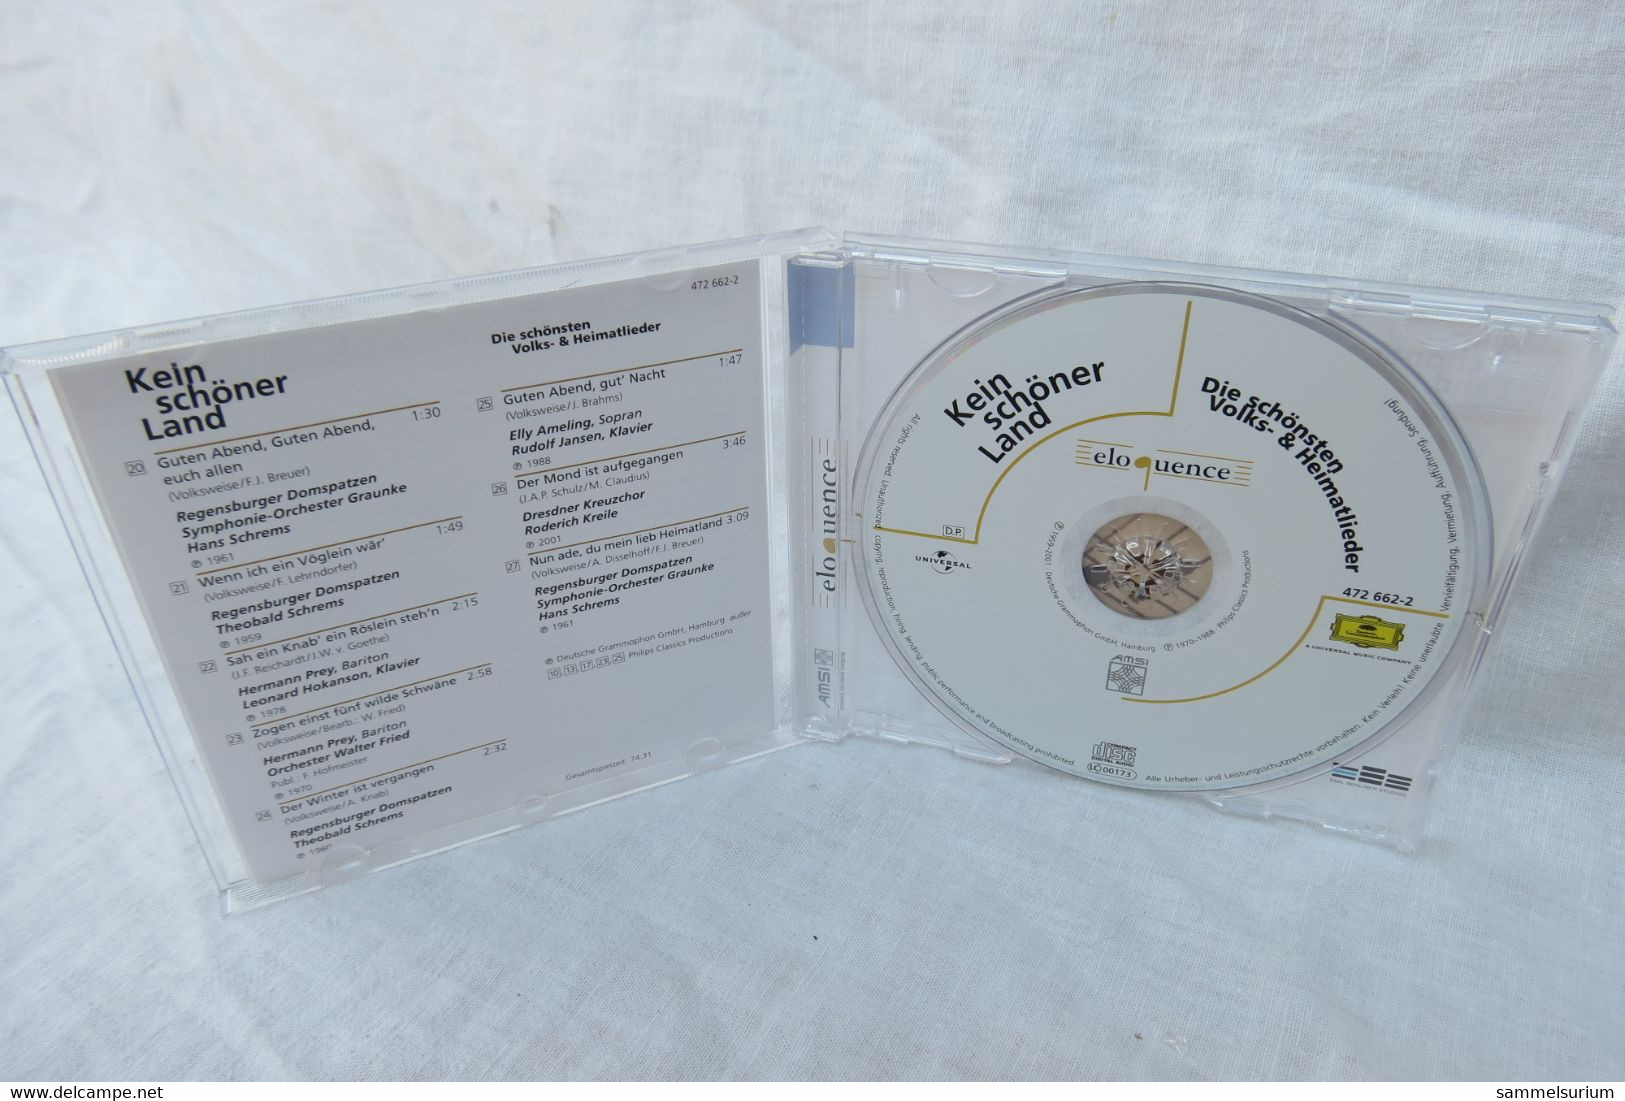 CD "Kein Schöner Land" Die Schönsten Volks- & Heimatlieder - Altri - Musica Tedesca